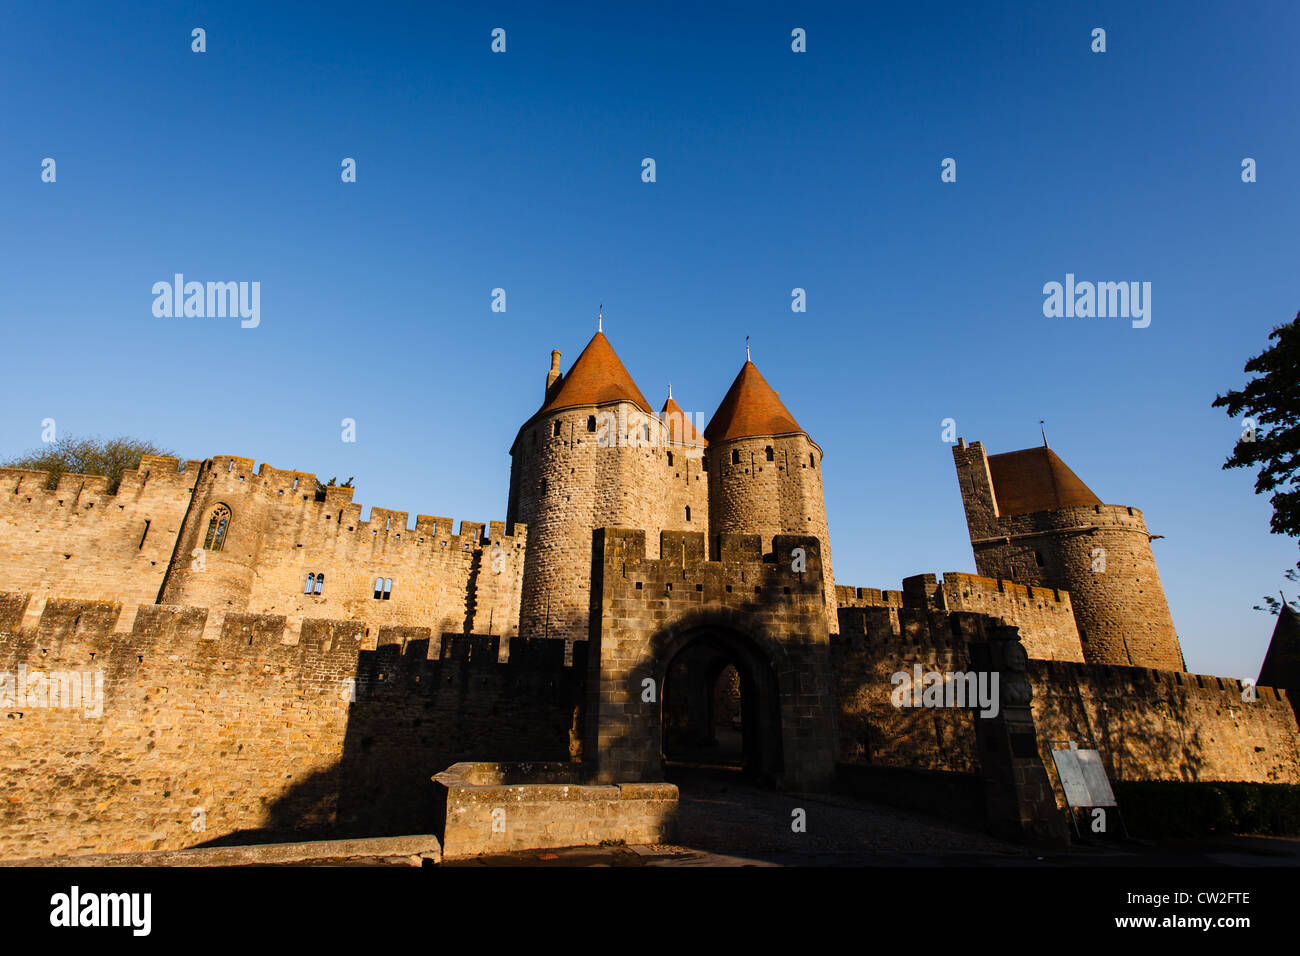 Entrée du château comtal et des remparts avec tours de soleil sur leurs toits de tuiles rouges de la cité médiévale de Carcassonne. Banque D'Images